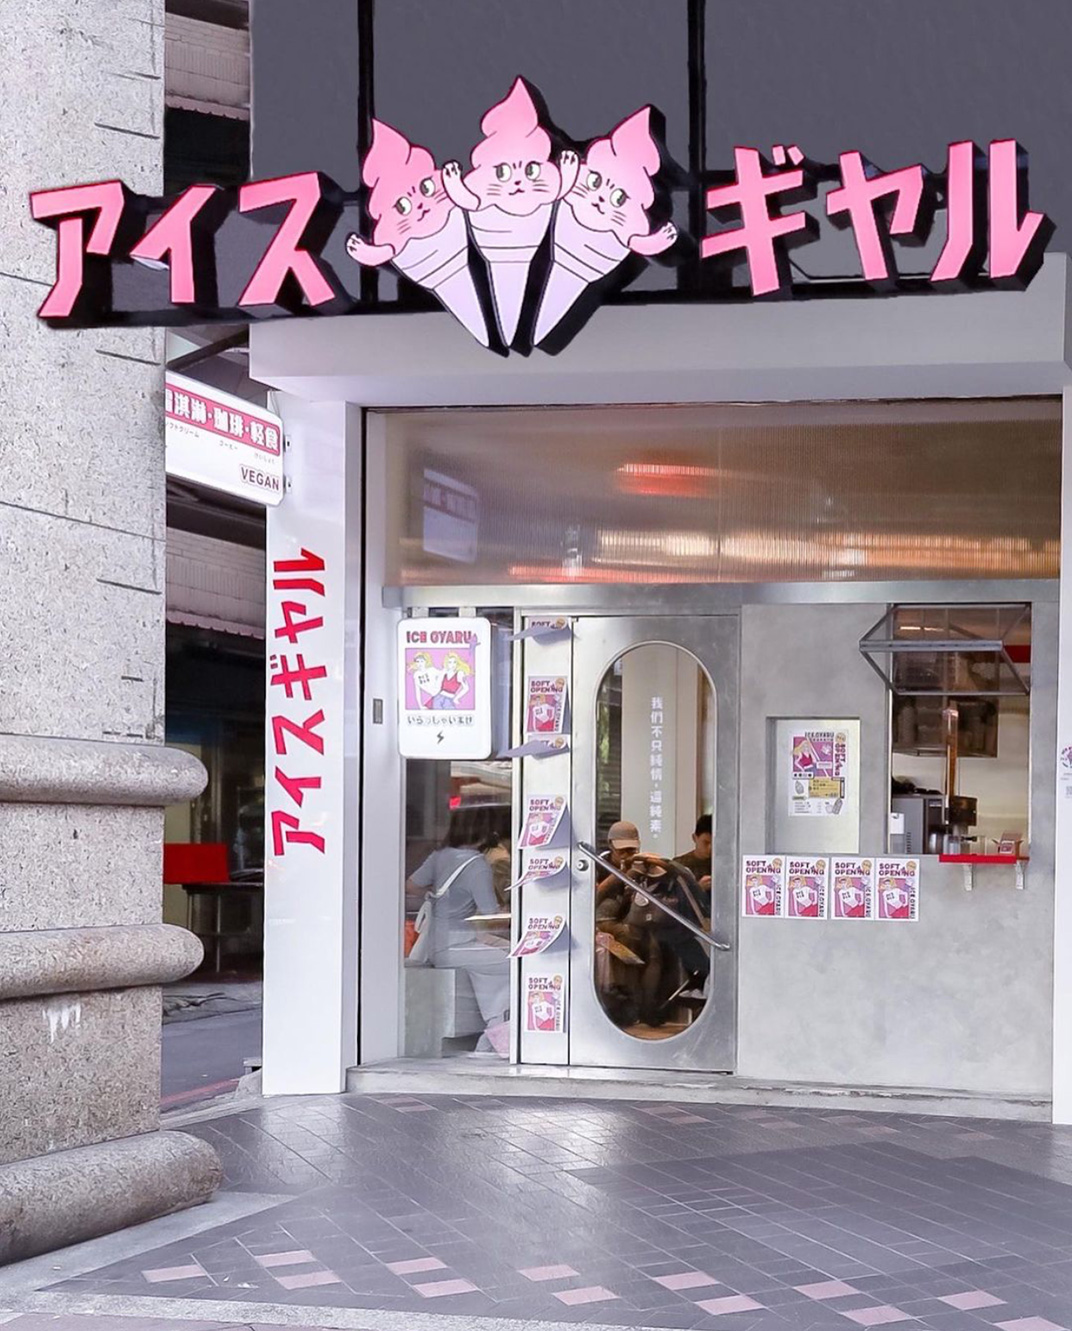 日漫风格霜淇淋专门店设计 台湾 上海 日式 漫画 插画设计 粉色 冰淇淋 海报设计 logo设计 vi设计 空间设计